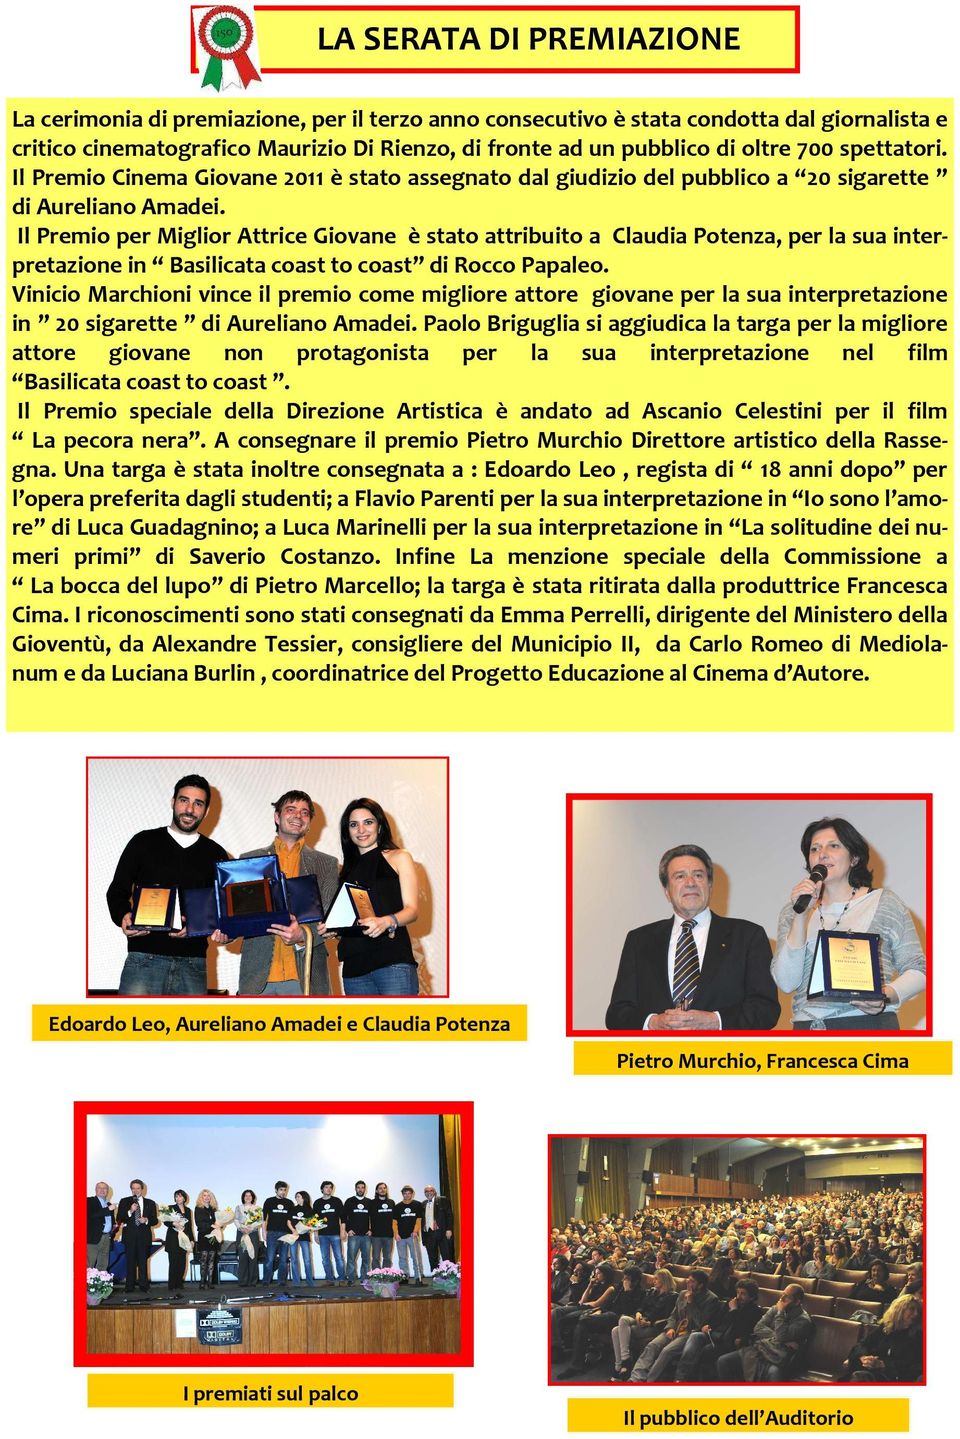 Il Premio per Miglior Attrice Giovane è stato attribuito a Claudia Potenza, per la sua interpretazione in Basilicata coast to coast di Rocco Papaleo.